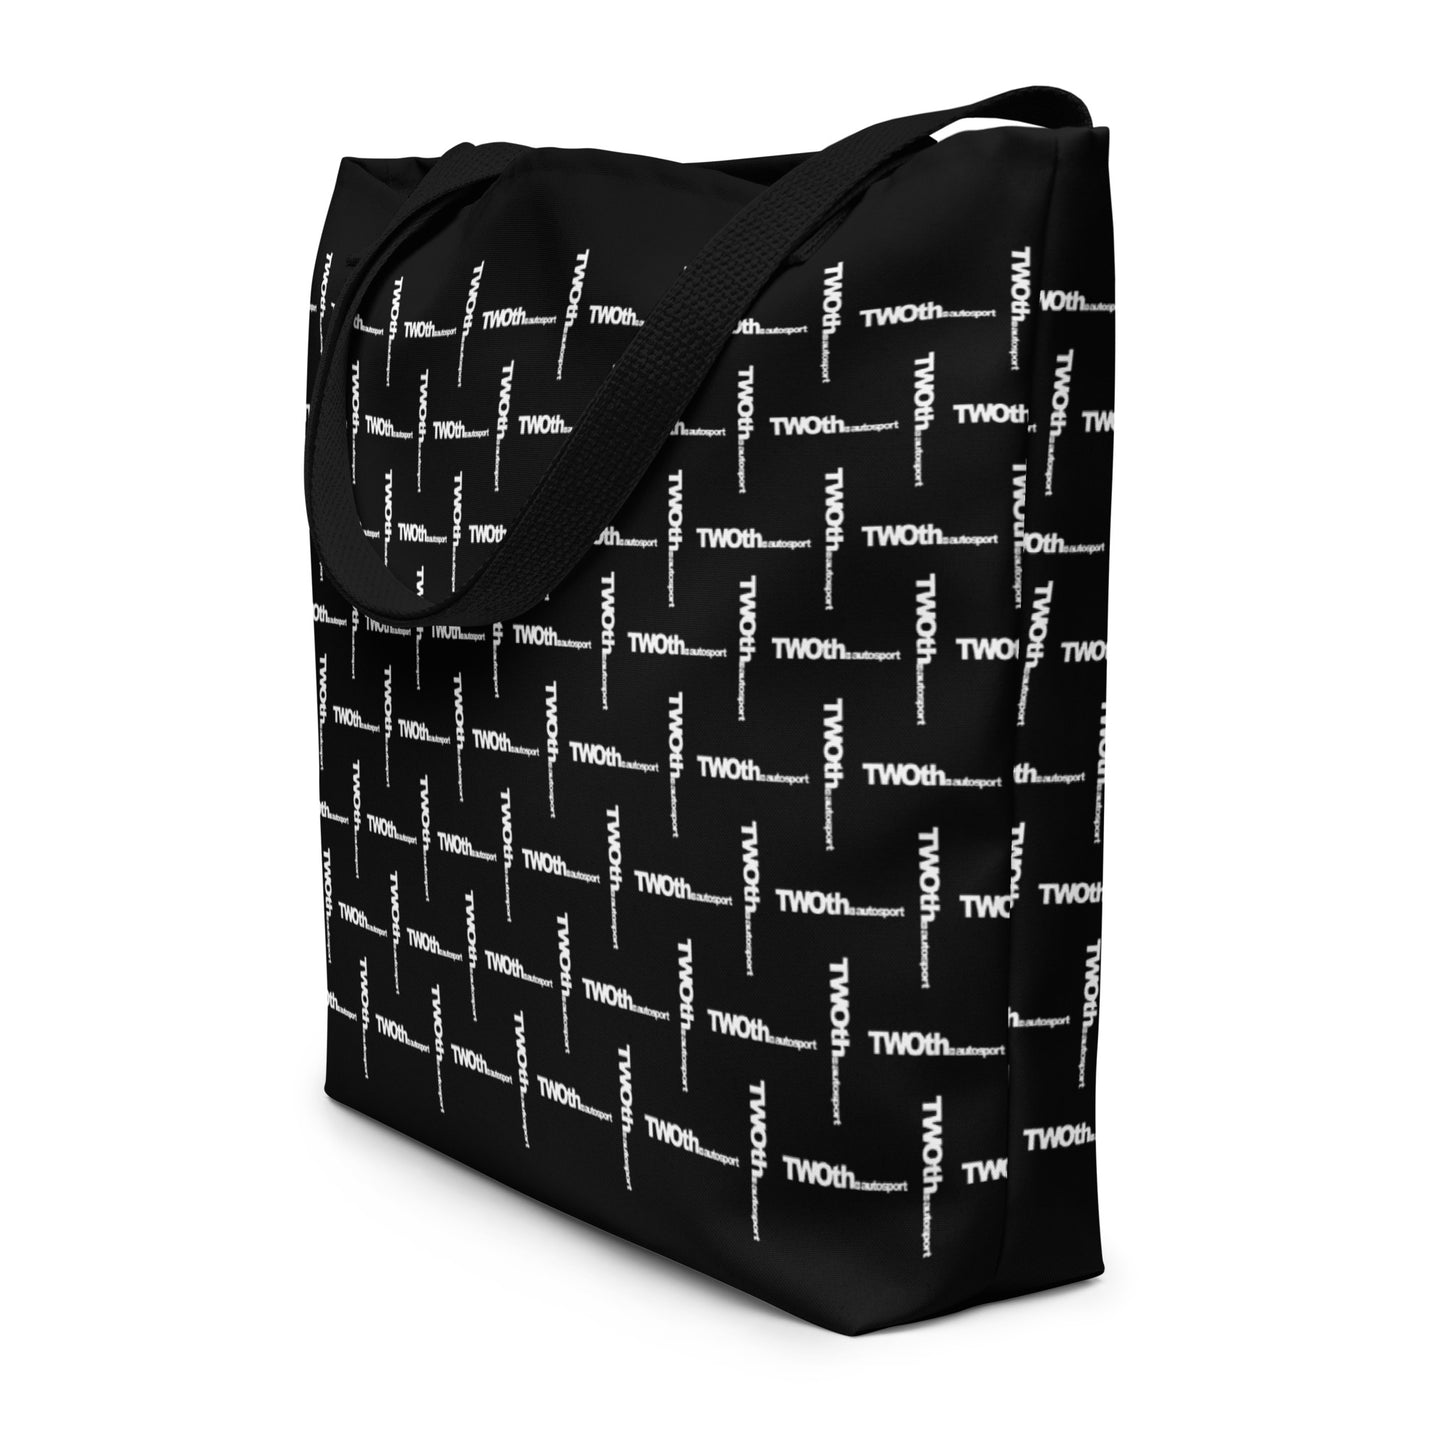 Designer Carbon | Large Tote Bag